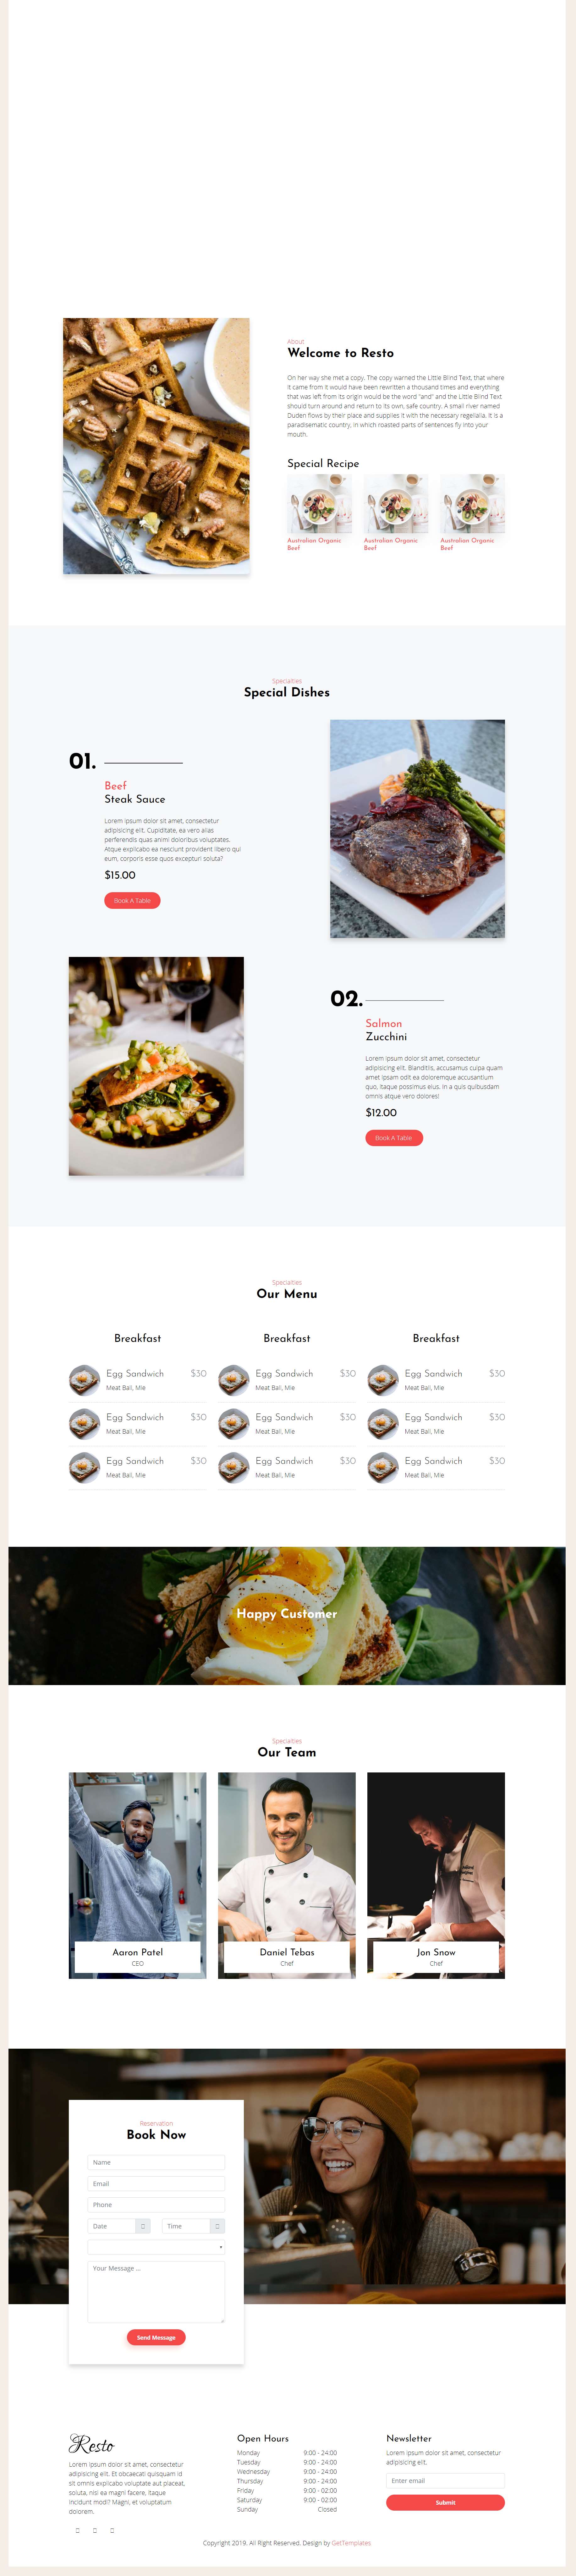 红色大气风格响应式精品餐厅美食网页模板